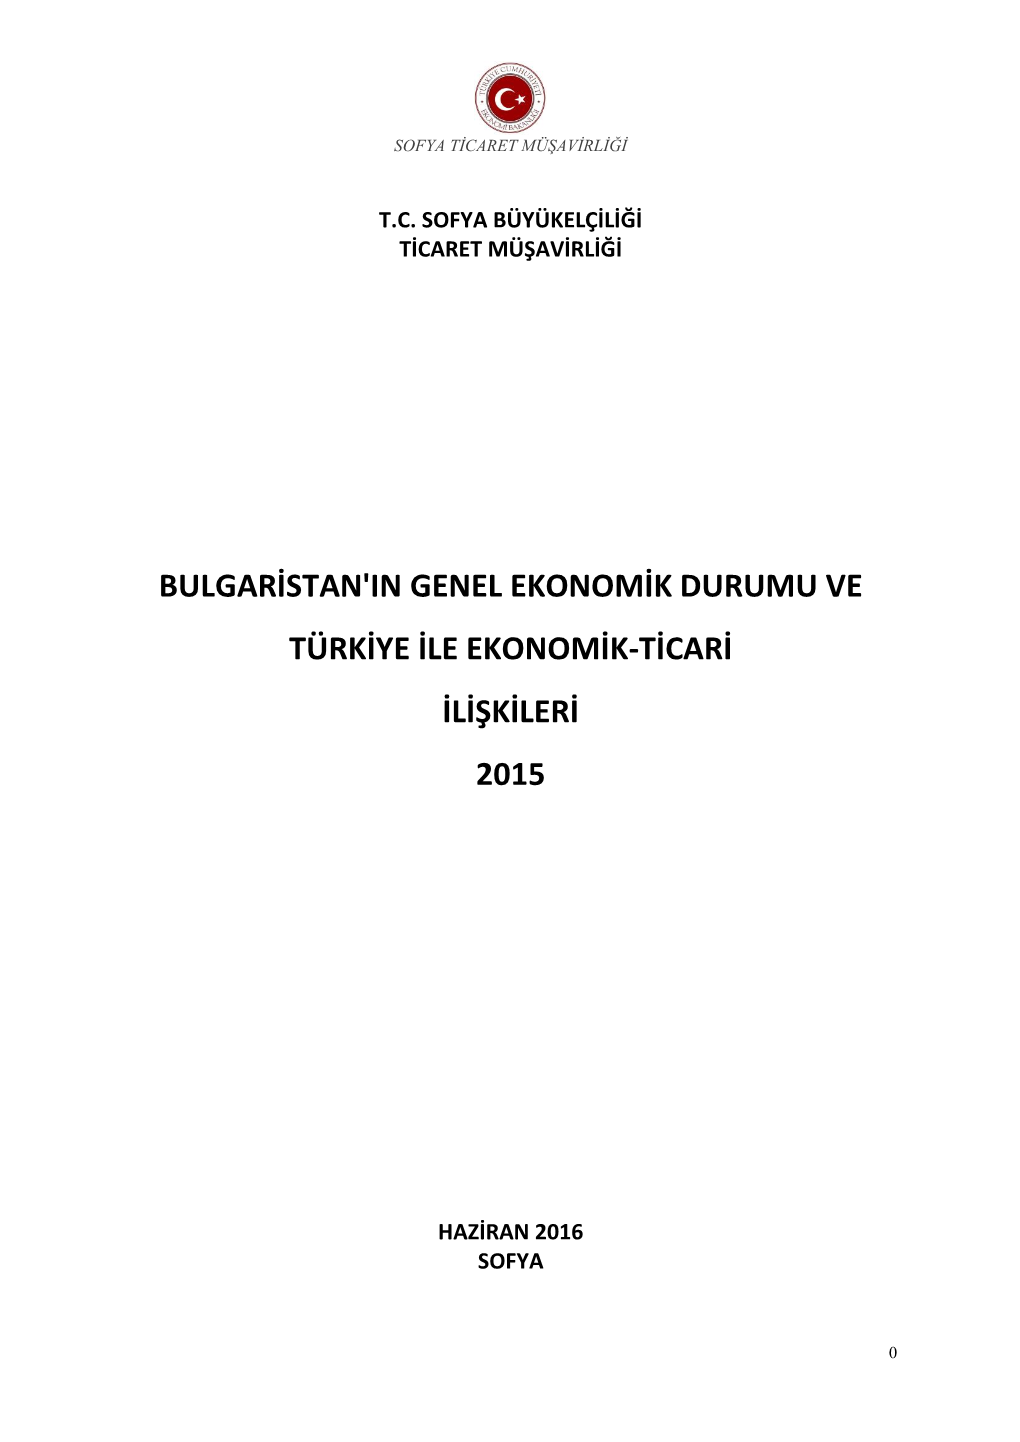 Bulgaristan'in Genel Ekonomik Durumu Ve Türkiye Ile Ekonomik-Ticari Ilişkileri 2015